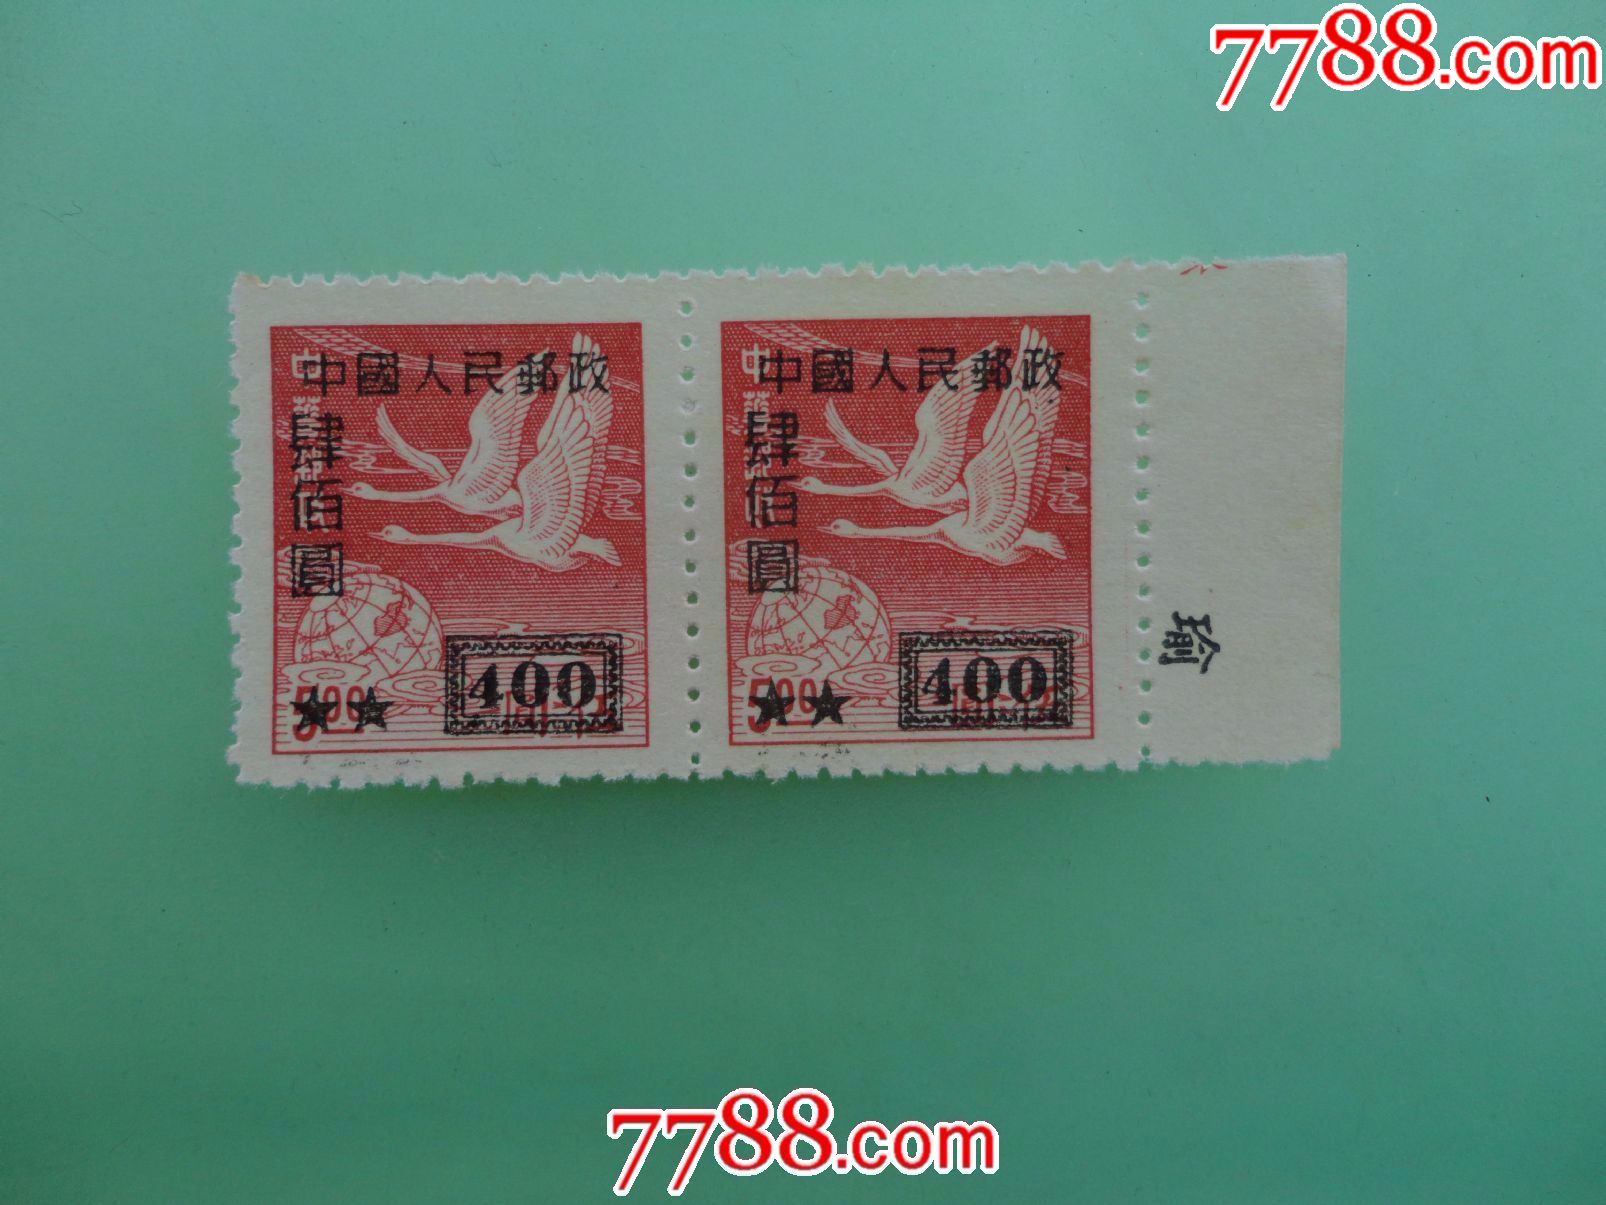 023中国邮政《甲辰年》特种邮票图稿征集'